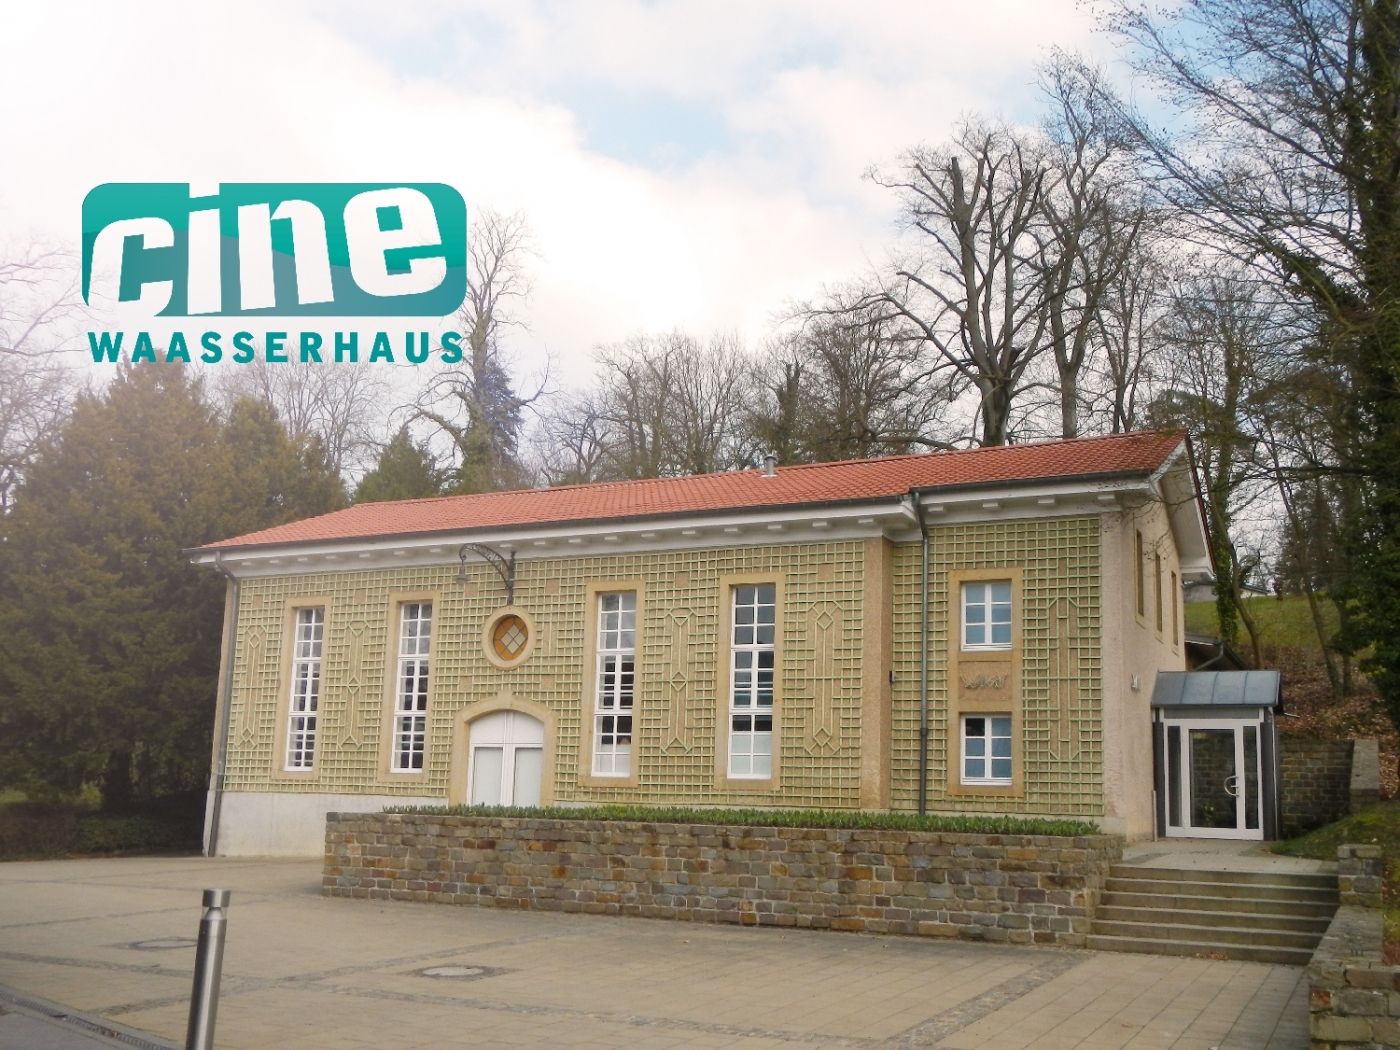 Ciné Waasserhaus Mondorf-les-Bains